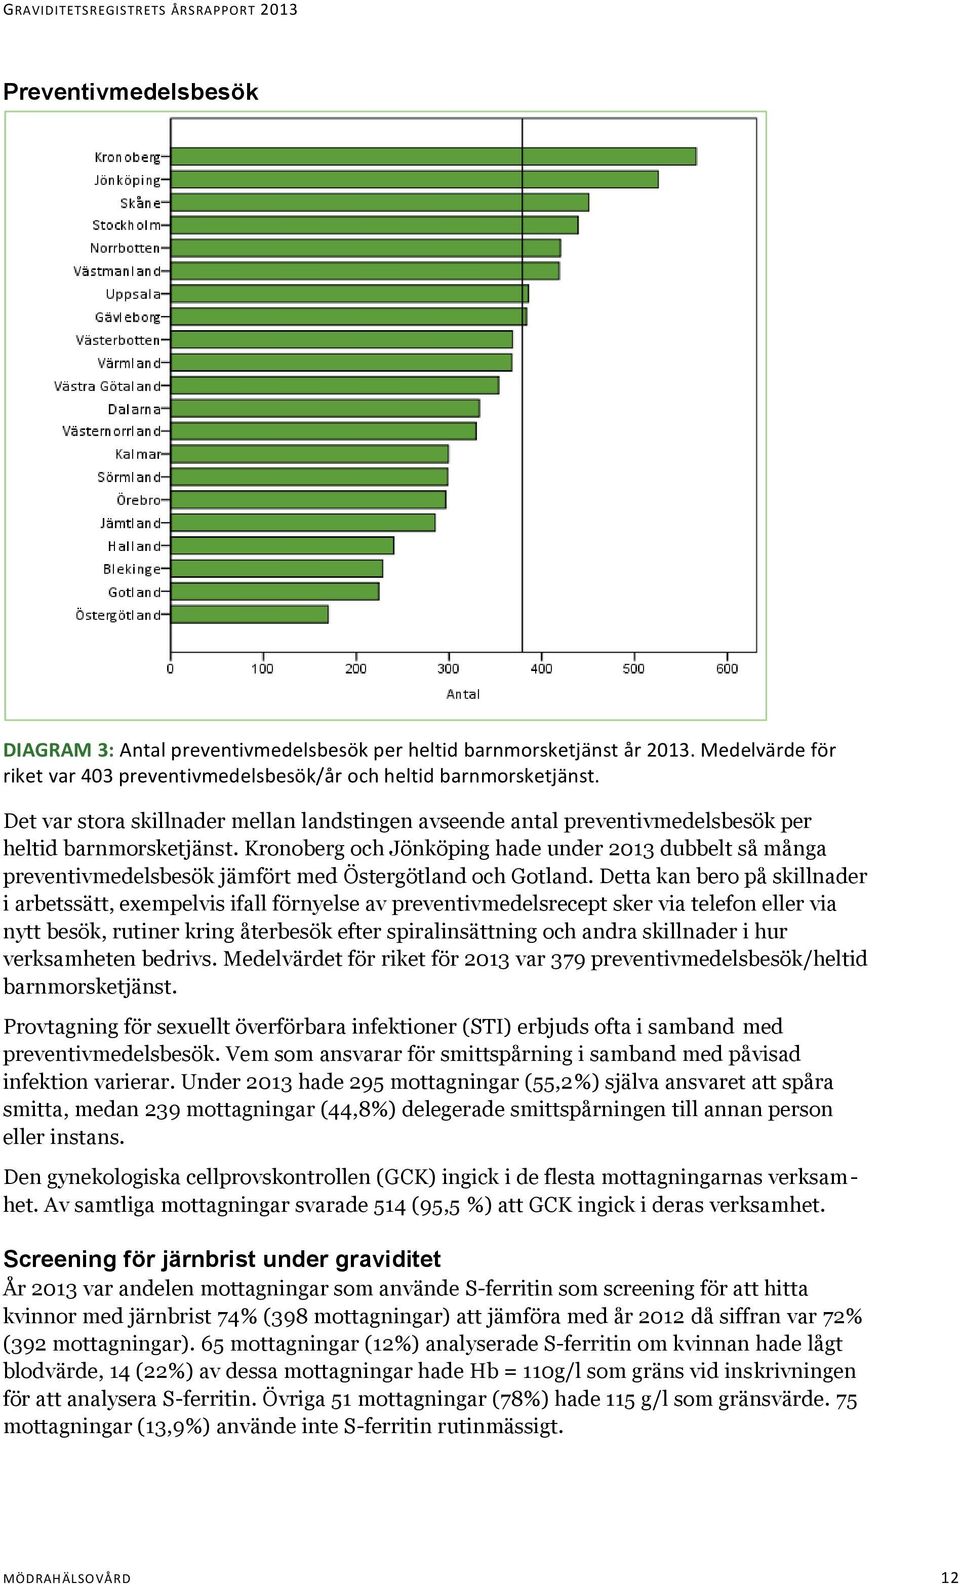 Kronoberg och Jönköping hade under 2013 dubbelt så många preventivmedelsbesök jämfört med Östergötland och Gotland.